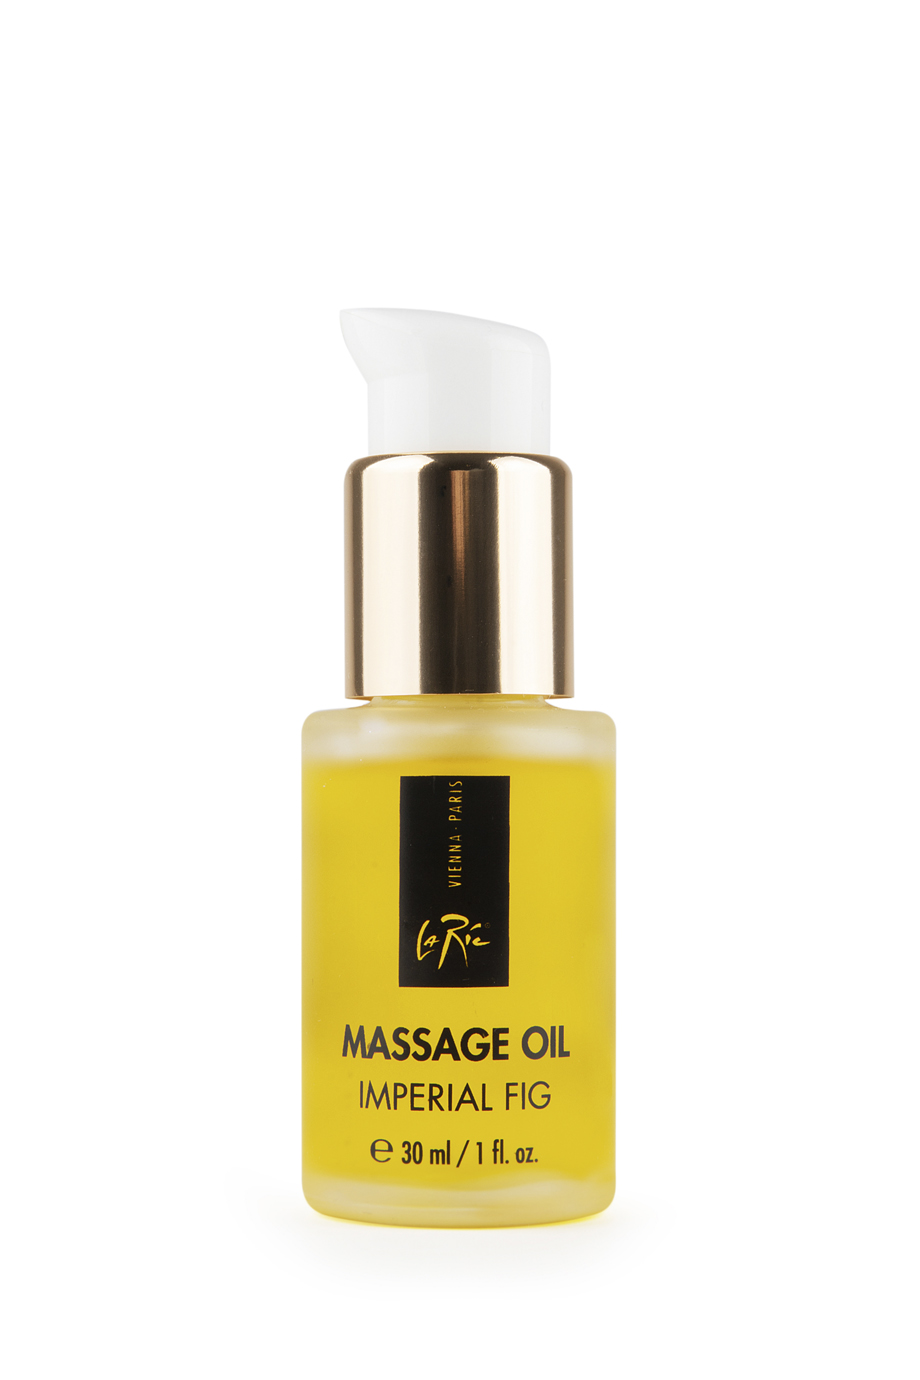 La Ric Massage Oil Imperial Fig 30ml - интернет-магазин профессиональной косметики Spadream, изображение 38556